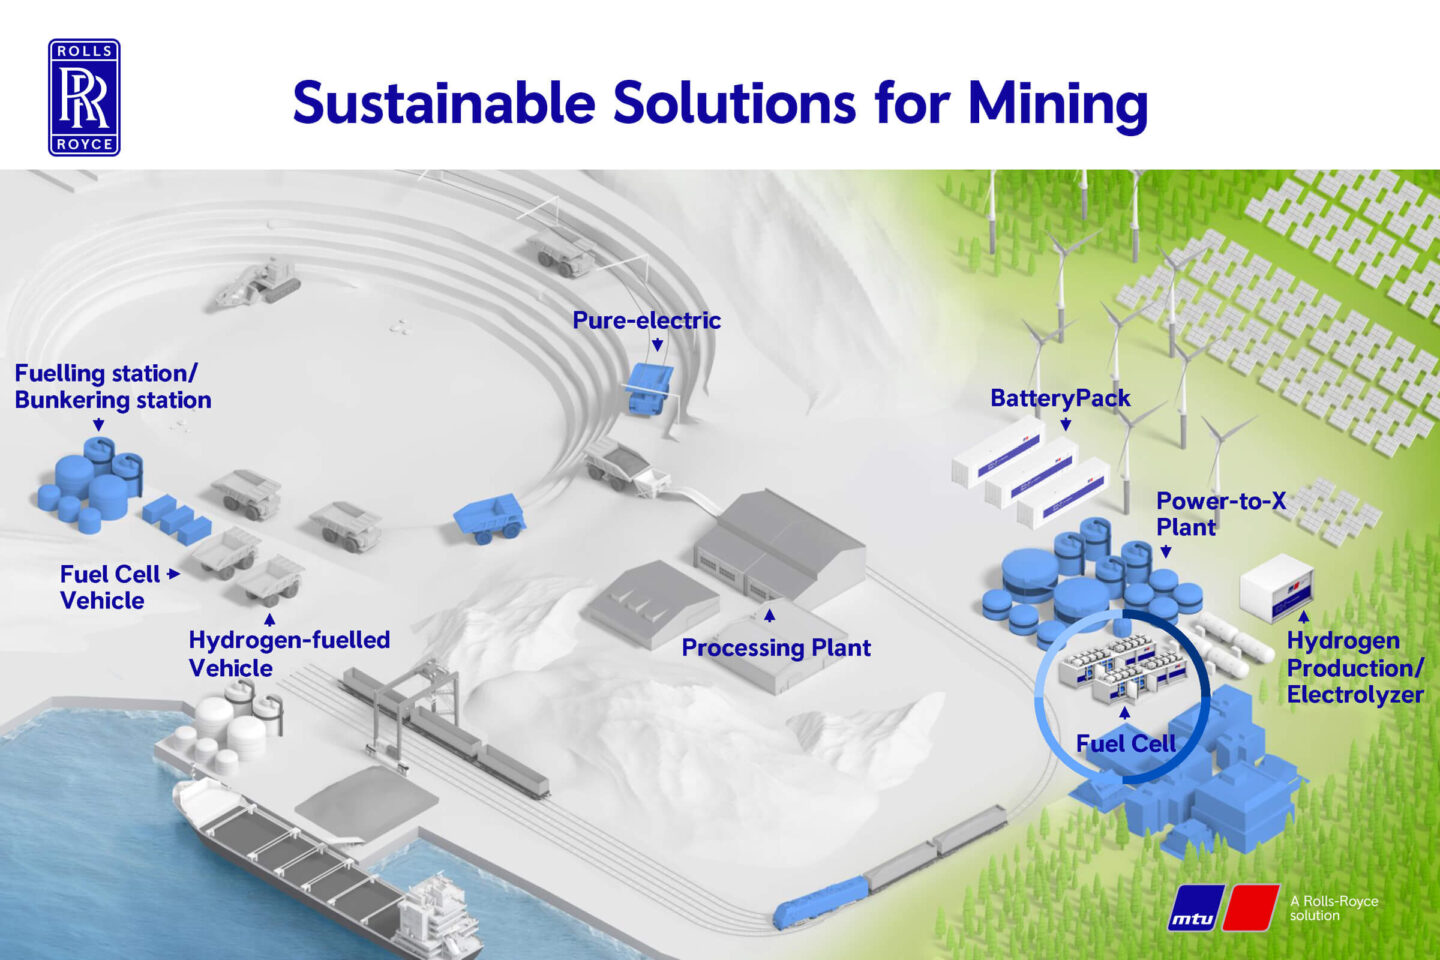 Soluções sustentáveis para mineração